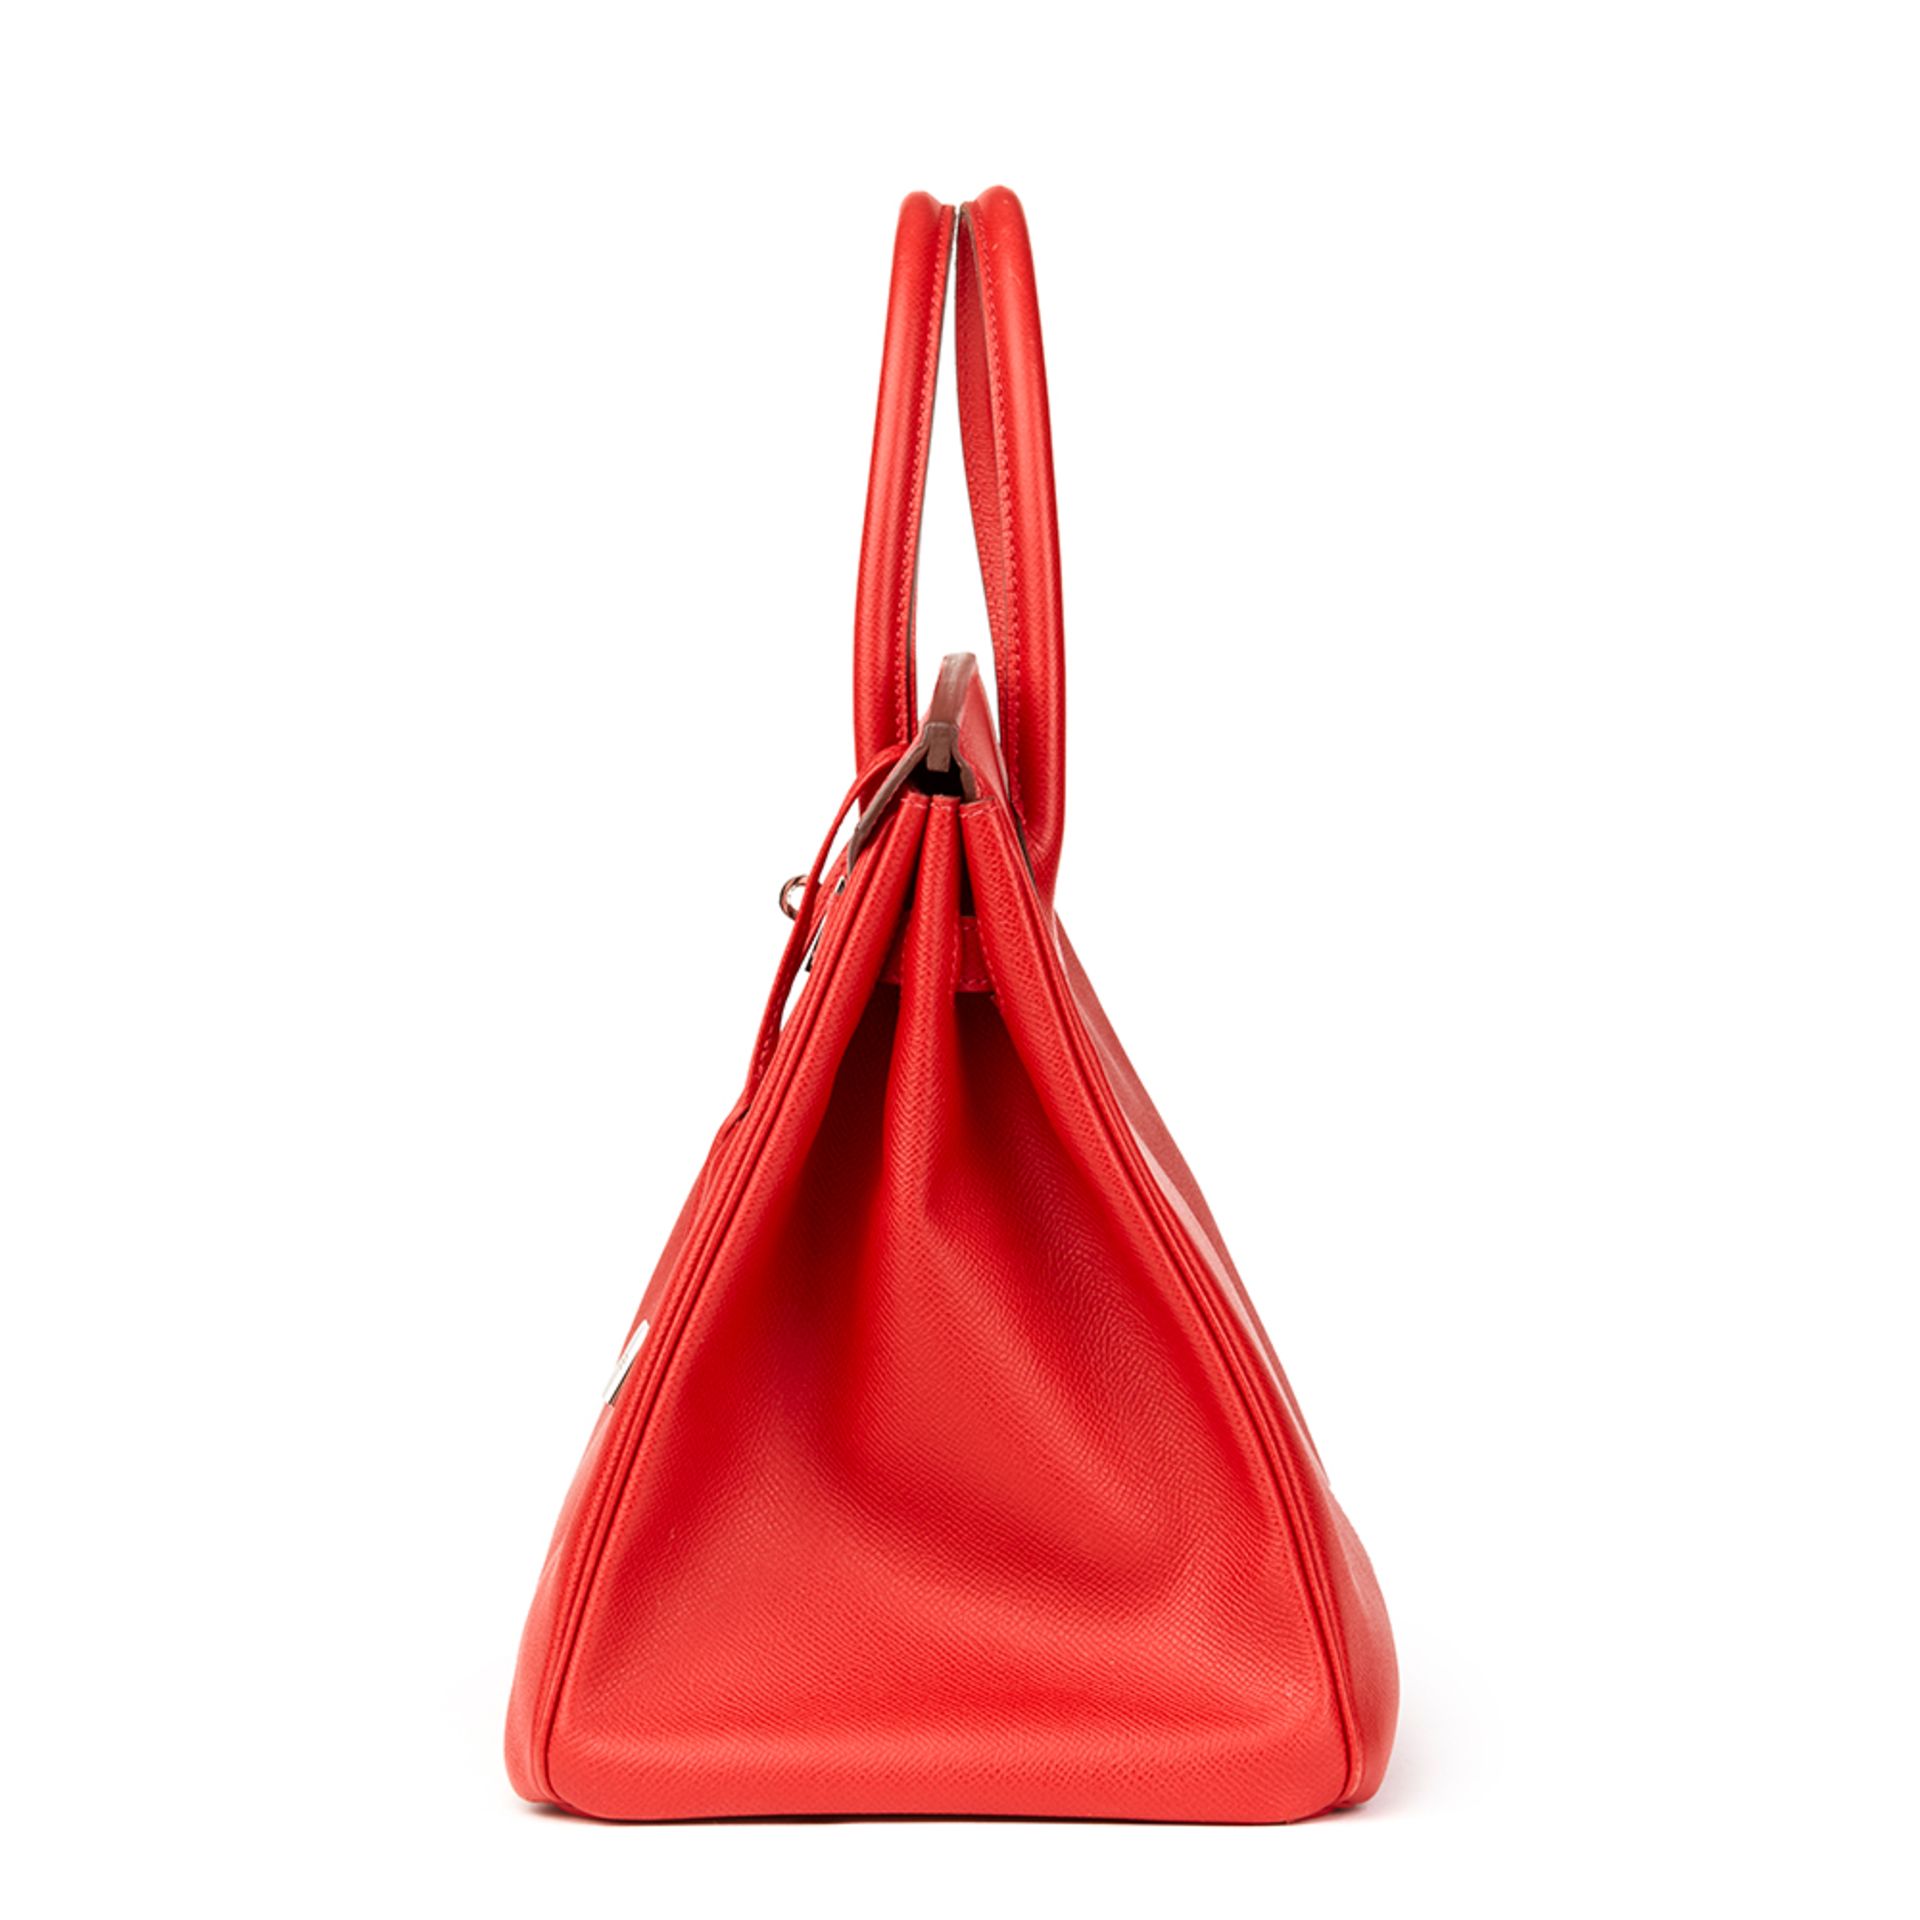 Hermès Rouge Casaque Epsom Leather Birkin 35cm - Image 5 of 11